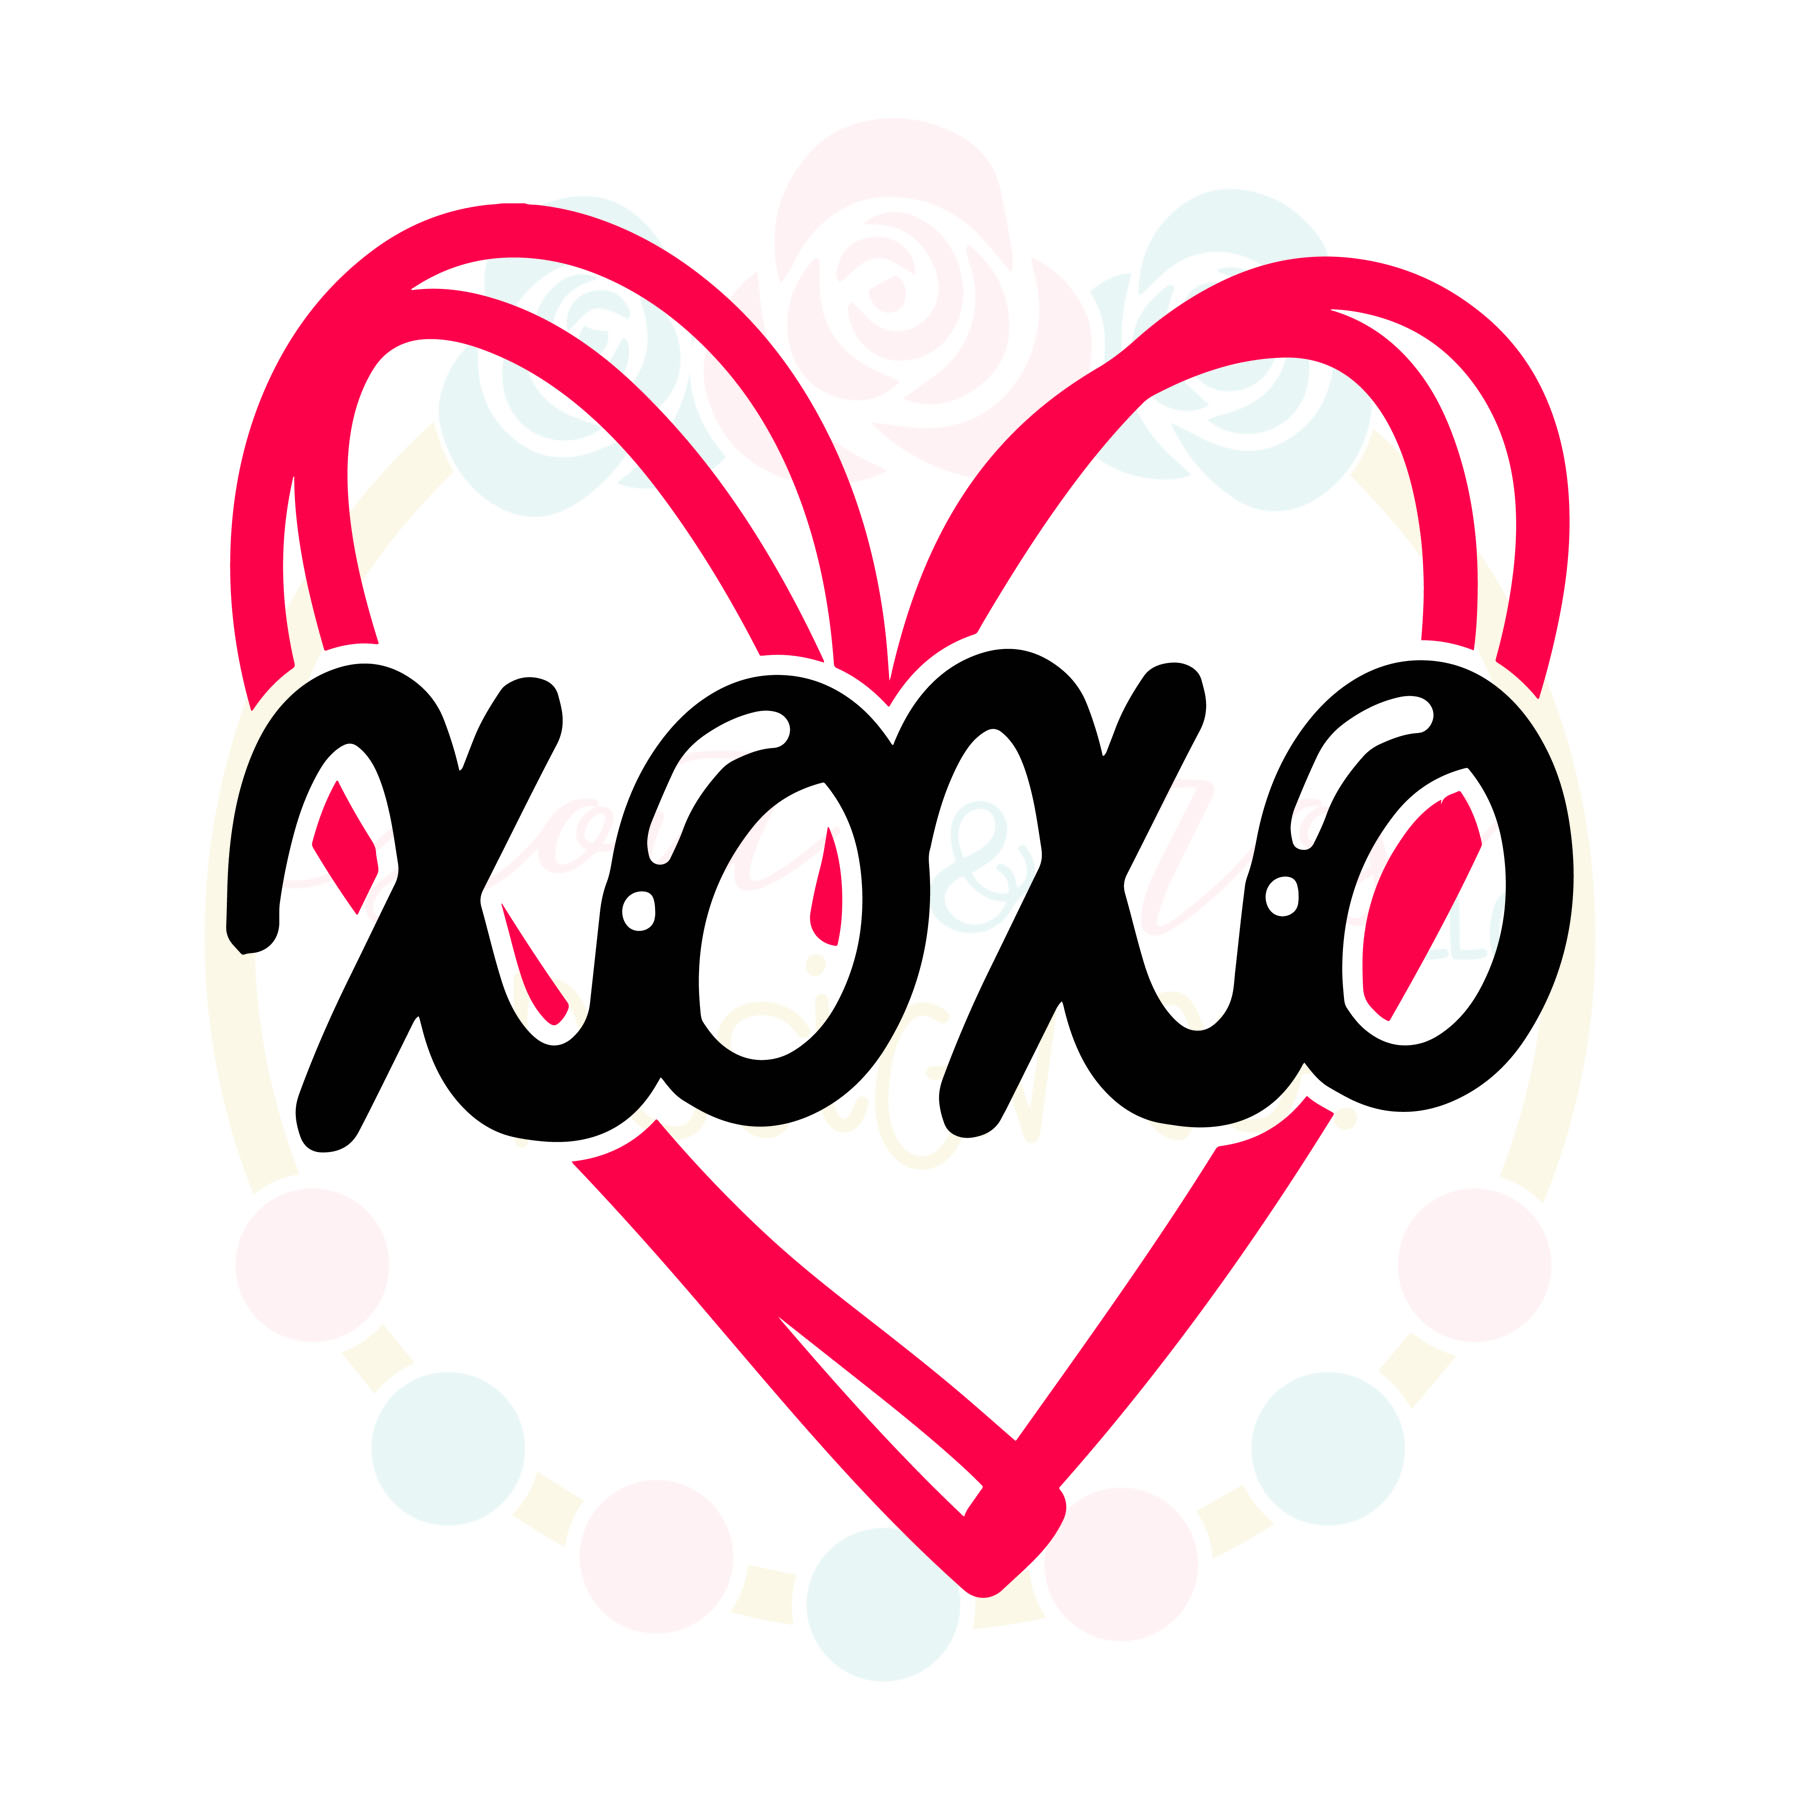 XOXO Heart - SoFontsy